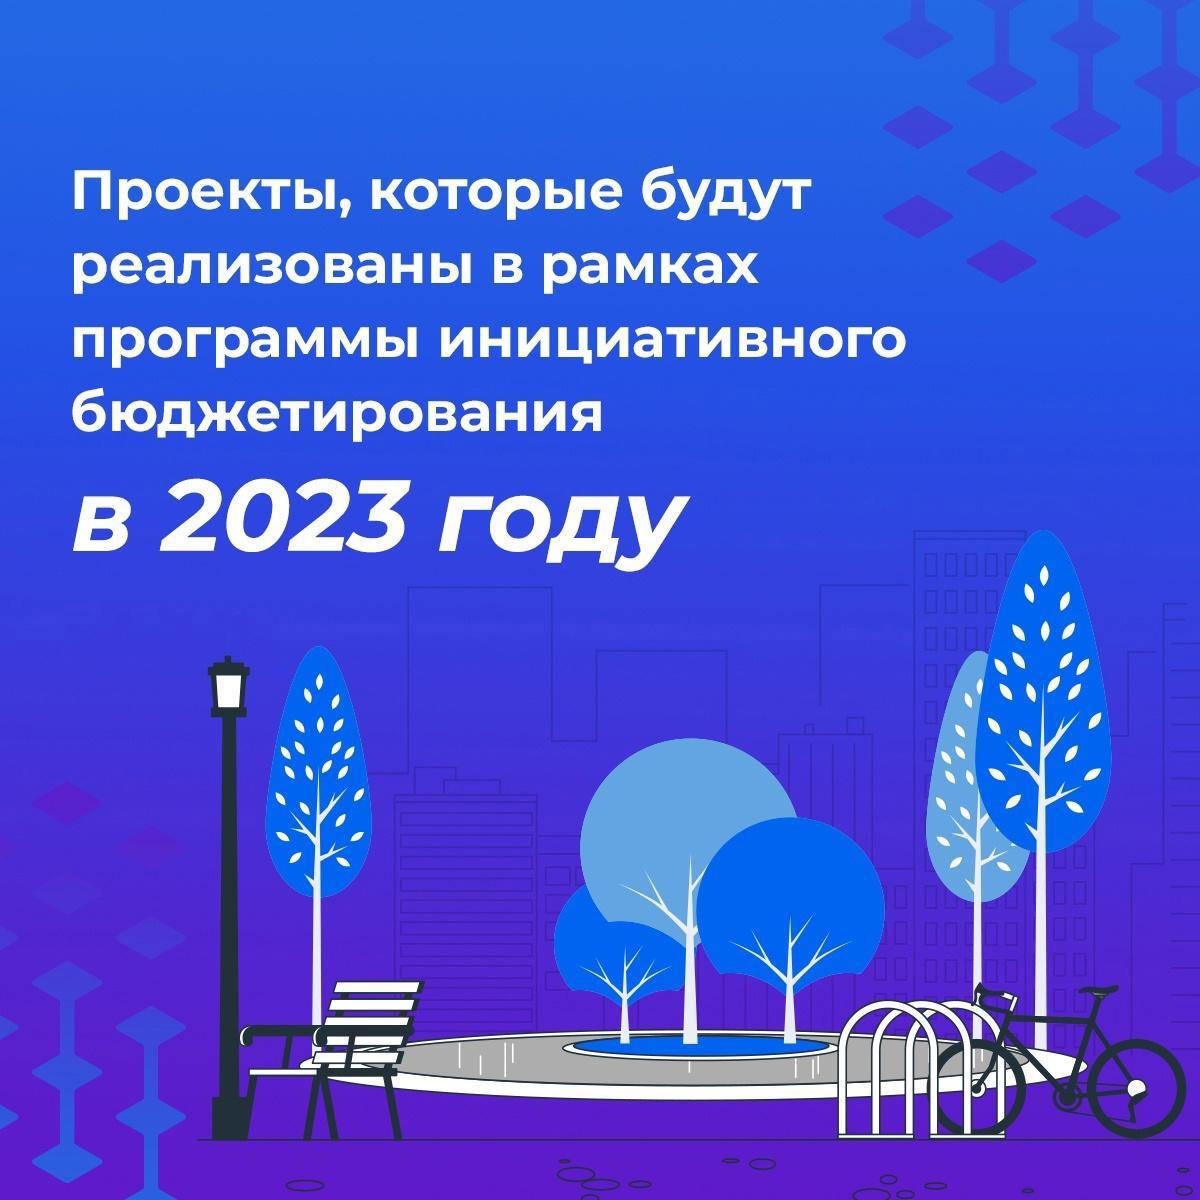 Десять проектов в рамках инициативного бюджетирования запланированы к реализации на территории Новооскольского городского округа в 2023 году.